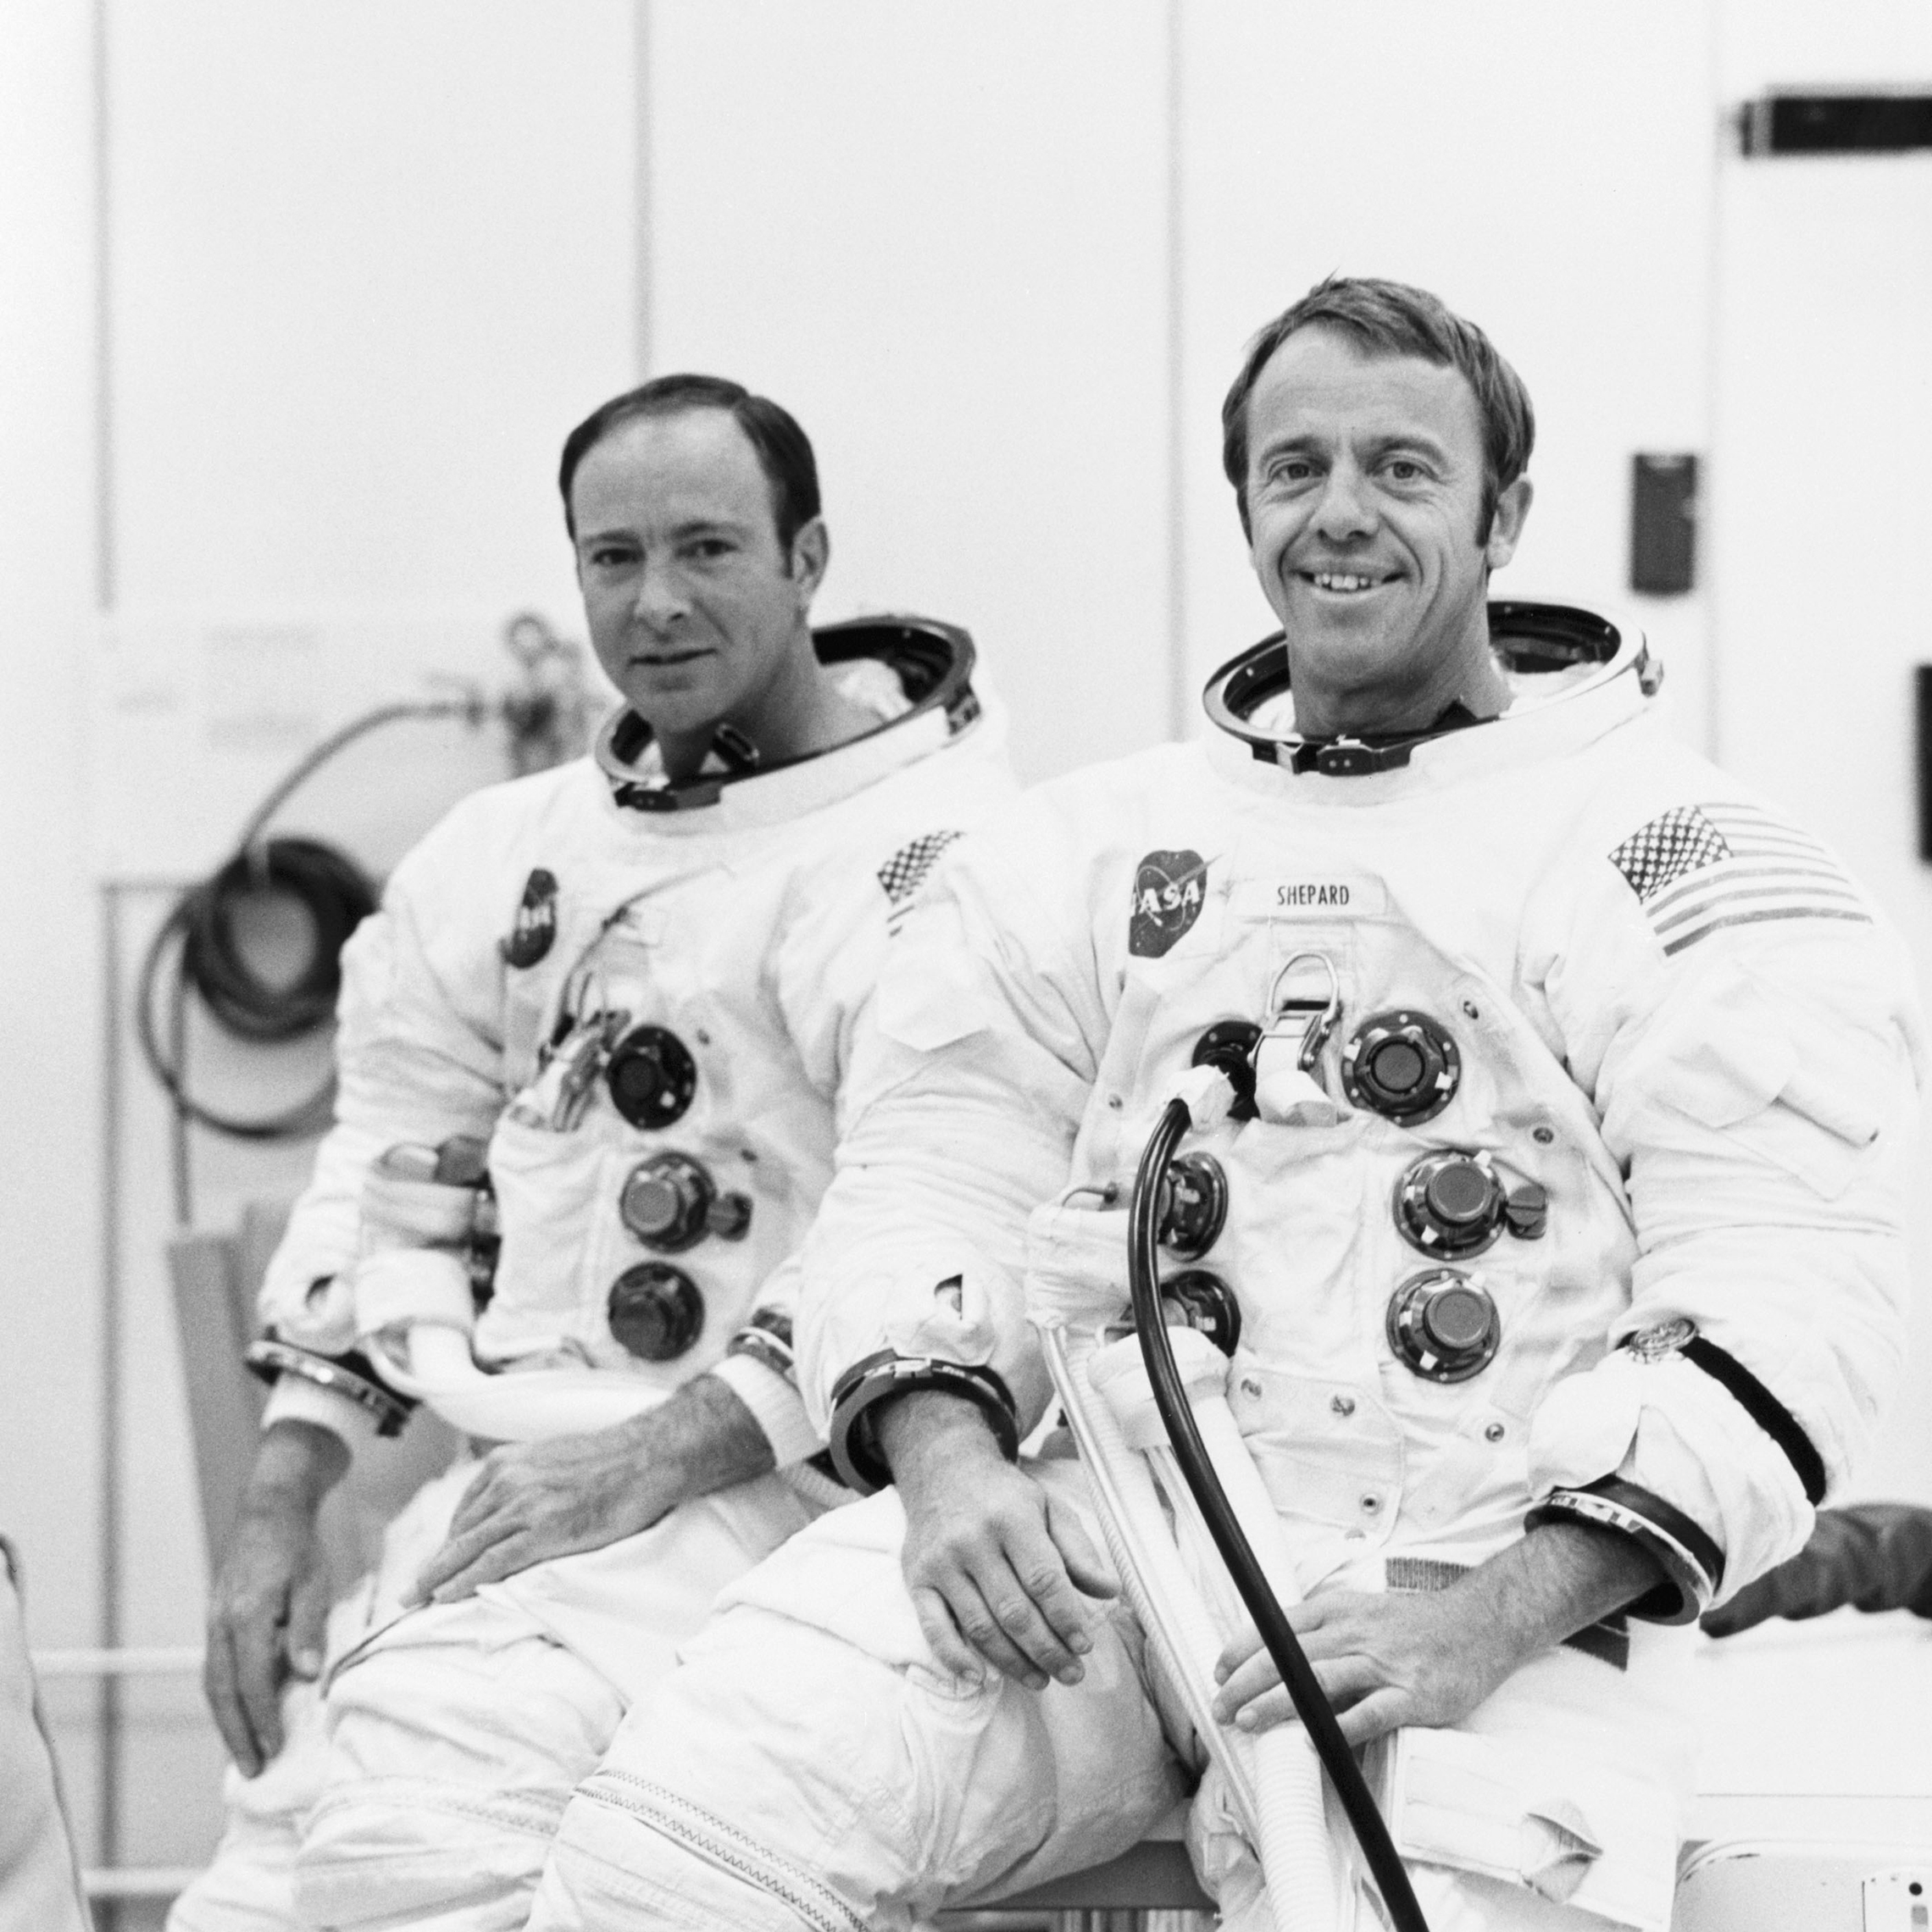 18.September 1970: Astronauter Alan B. Shepard Jr. (højre), kommandør og Edgar D. Mitchell, Lunar module pilot, er velegnet til en bemandet højdekørsel i Apollo 14 lunar module (LM). Den bemandede kørsel i et vakuumkammer i den bemandede Rumfartøjsoperationsbygning blev udført for at validere LM ' s kommunikations-og vejlednings-og navigationssystemer. (NASA)'s communications and guidance and navigation systems. (NASA)